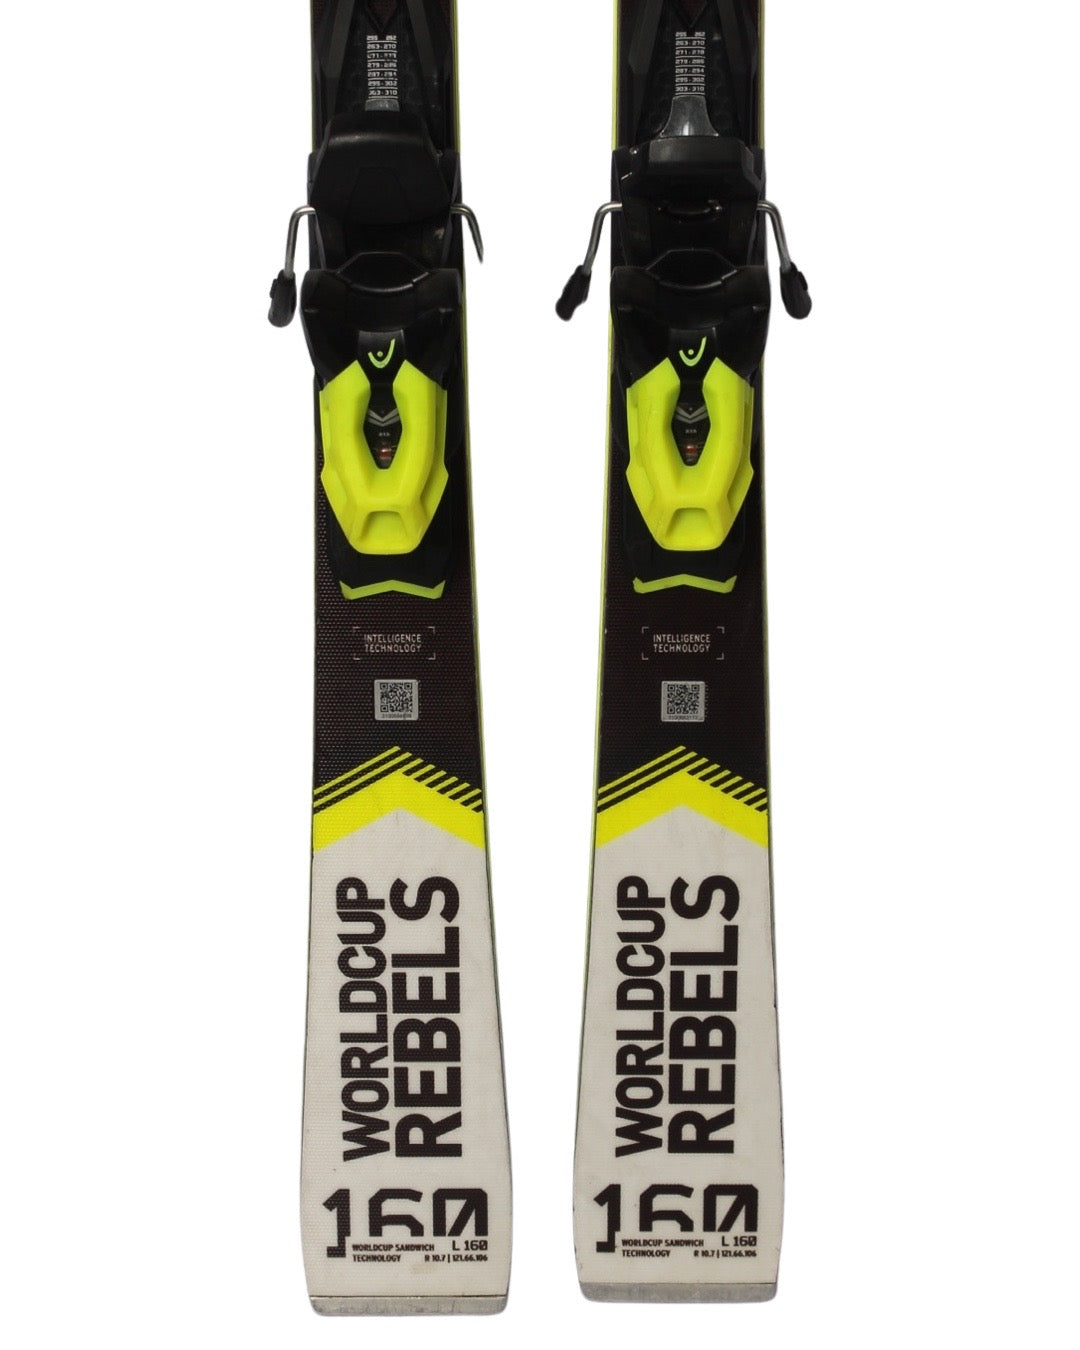 Ski - Head Worldcup Rebels i.SLR - 2299 kr